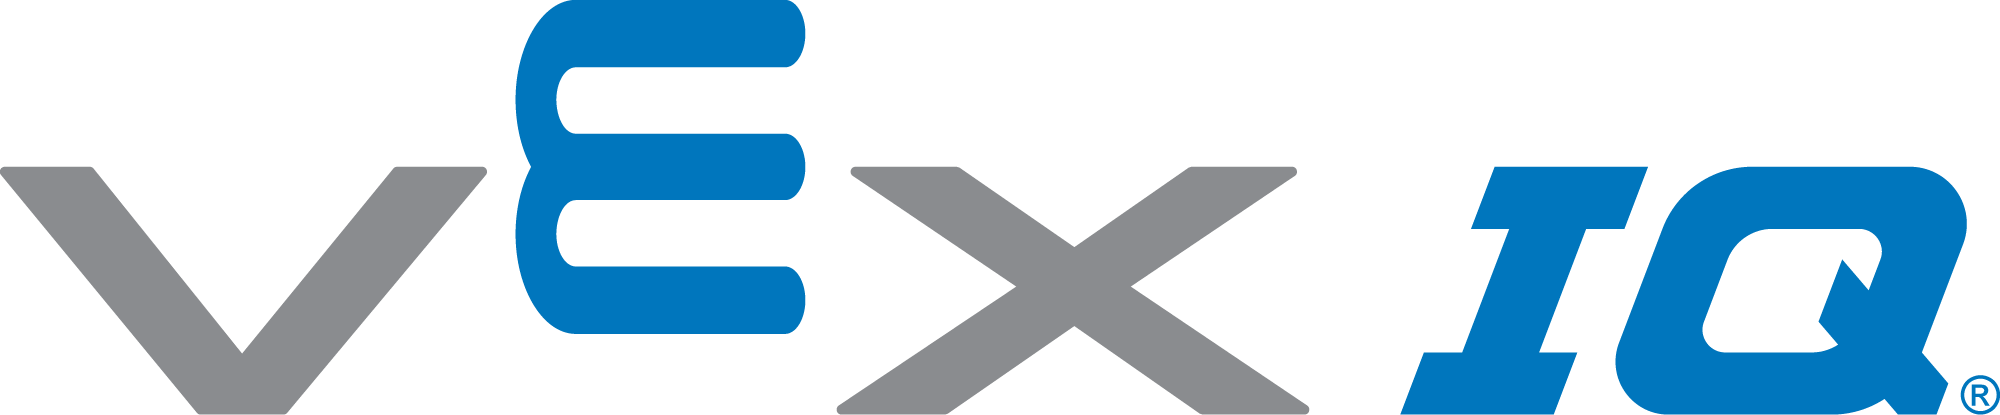 Logo VEX IQ. 